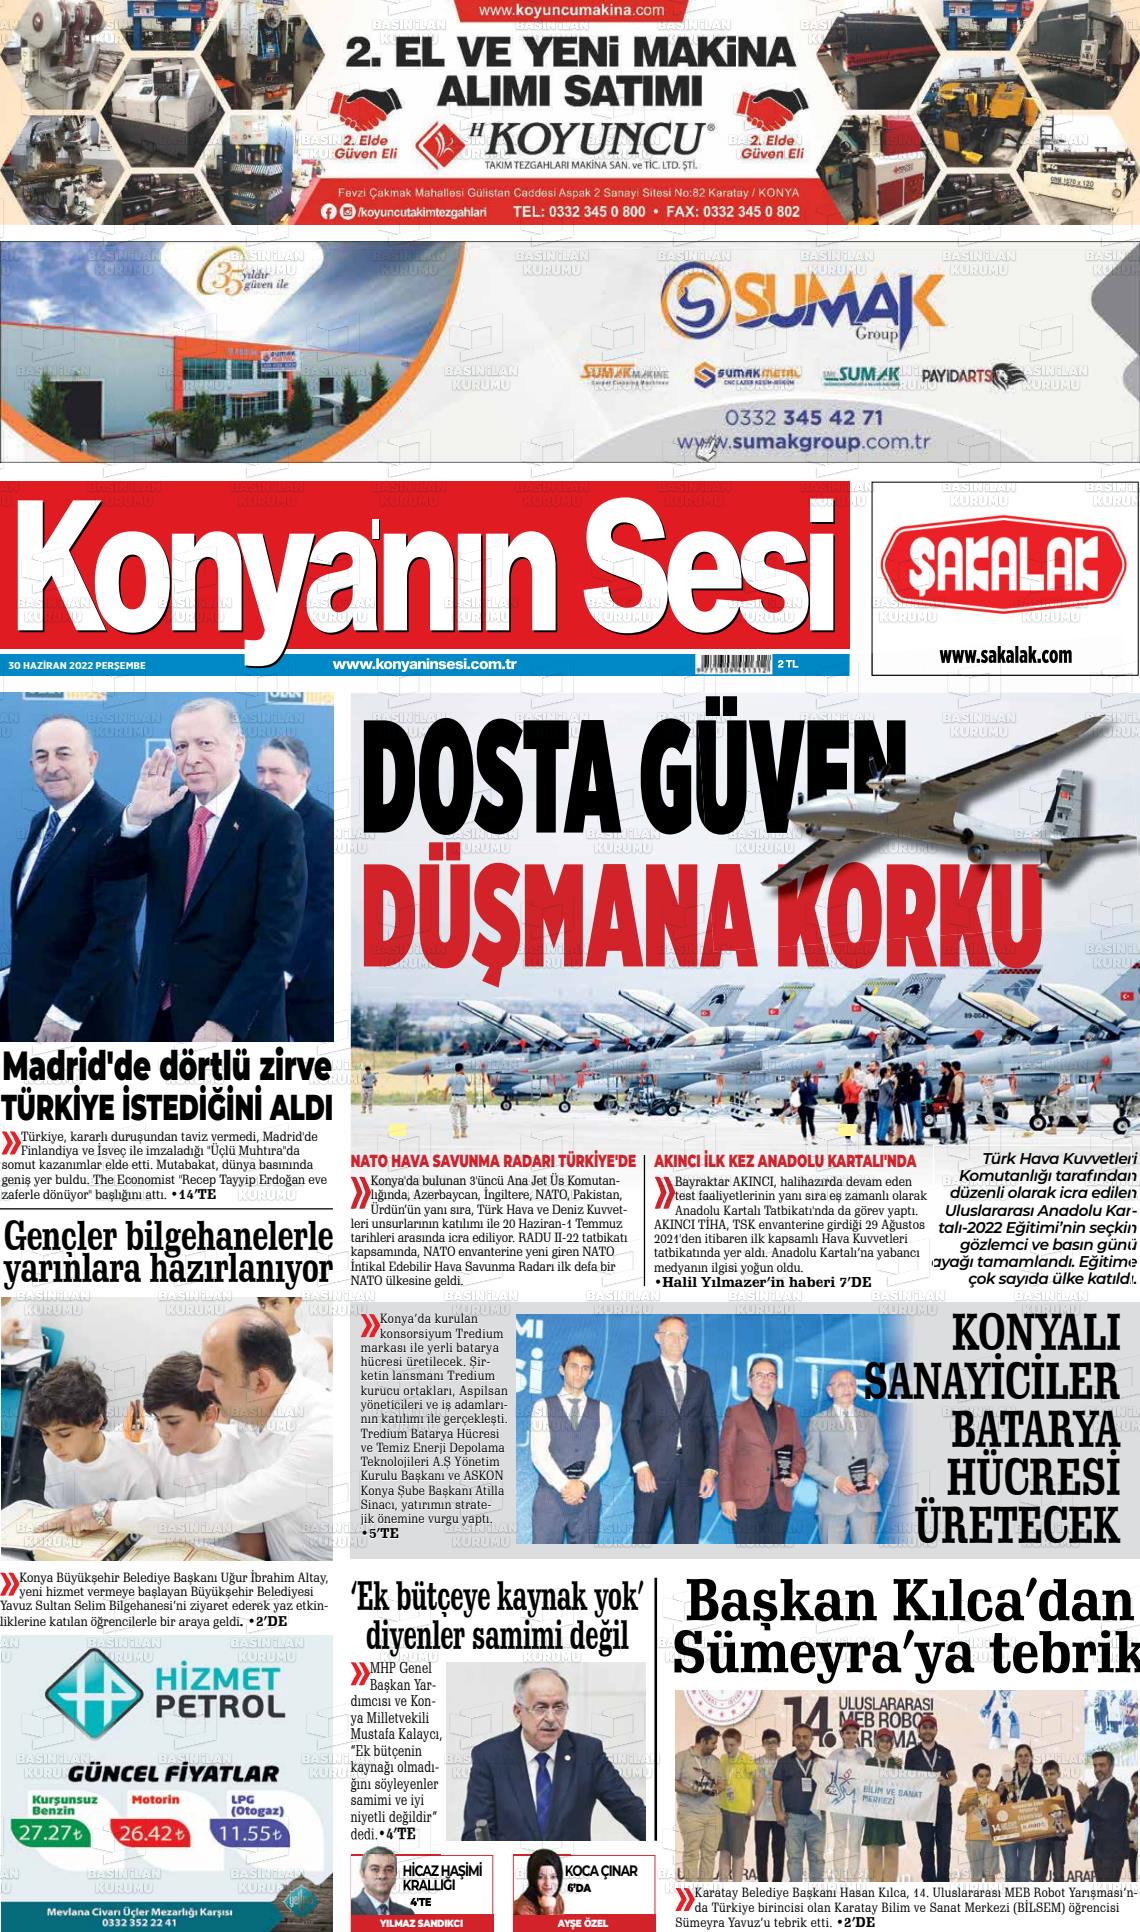 02 Temmuz 2022 Konyanin Sesi Gazete Manşeti